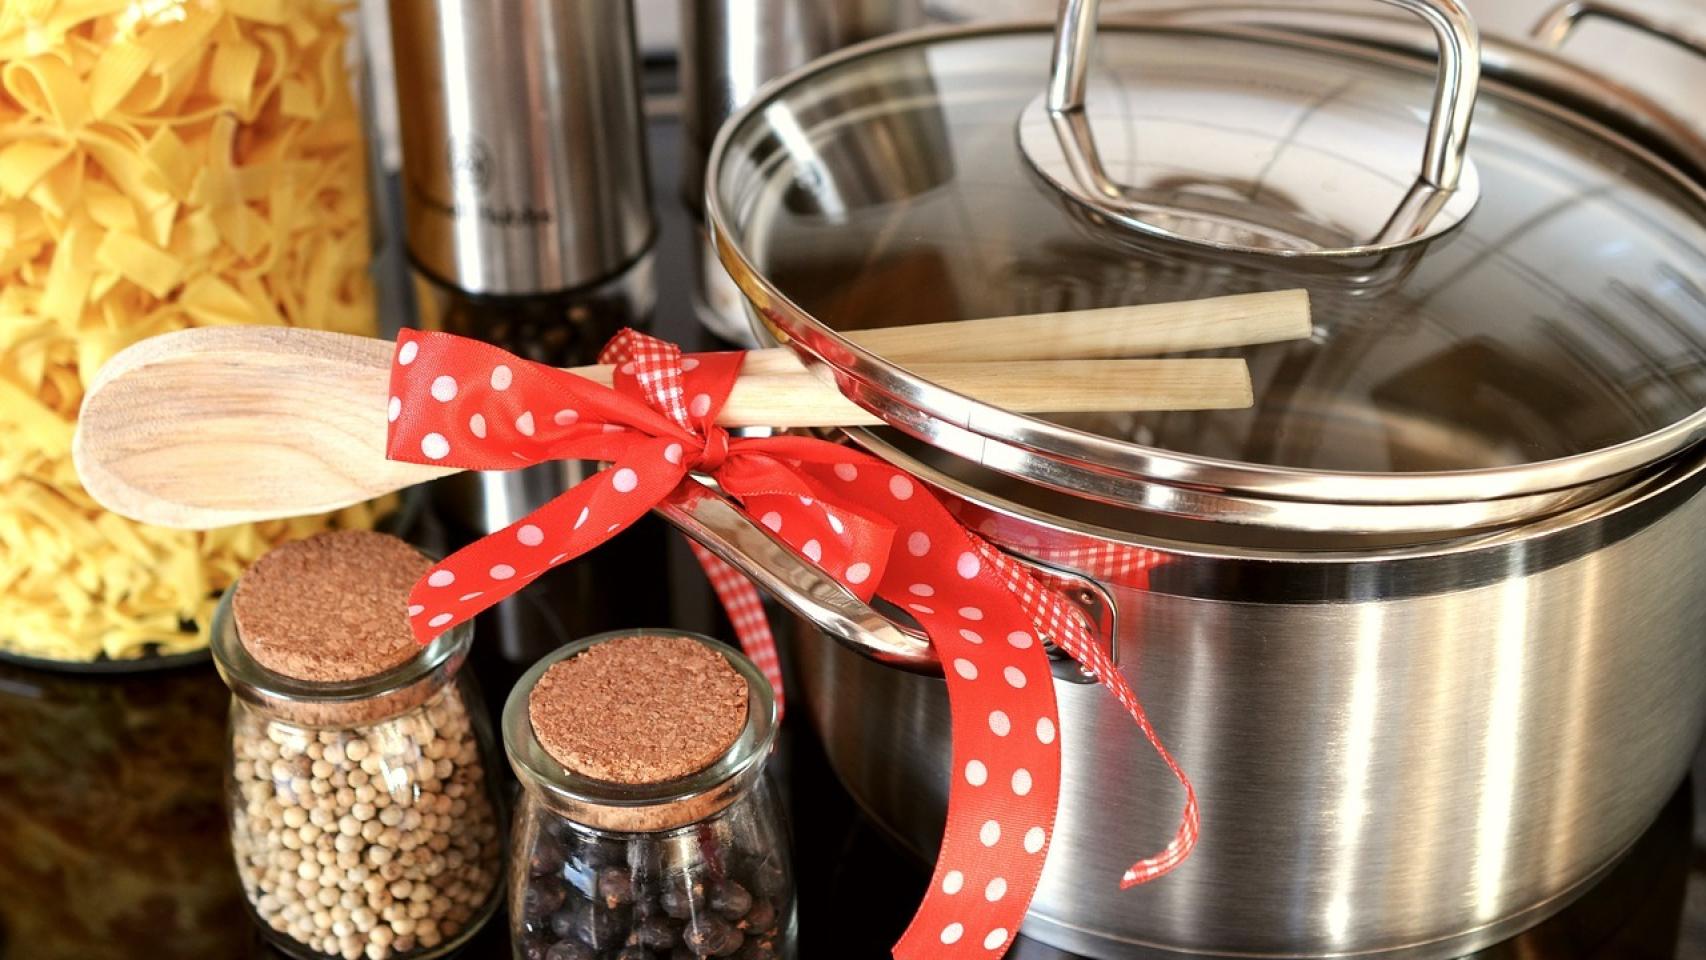 Seis utensilios de cocina esenciales que debería tener en su casa